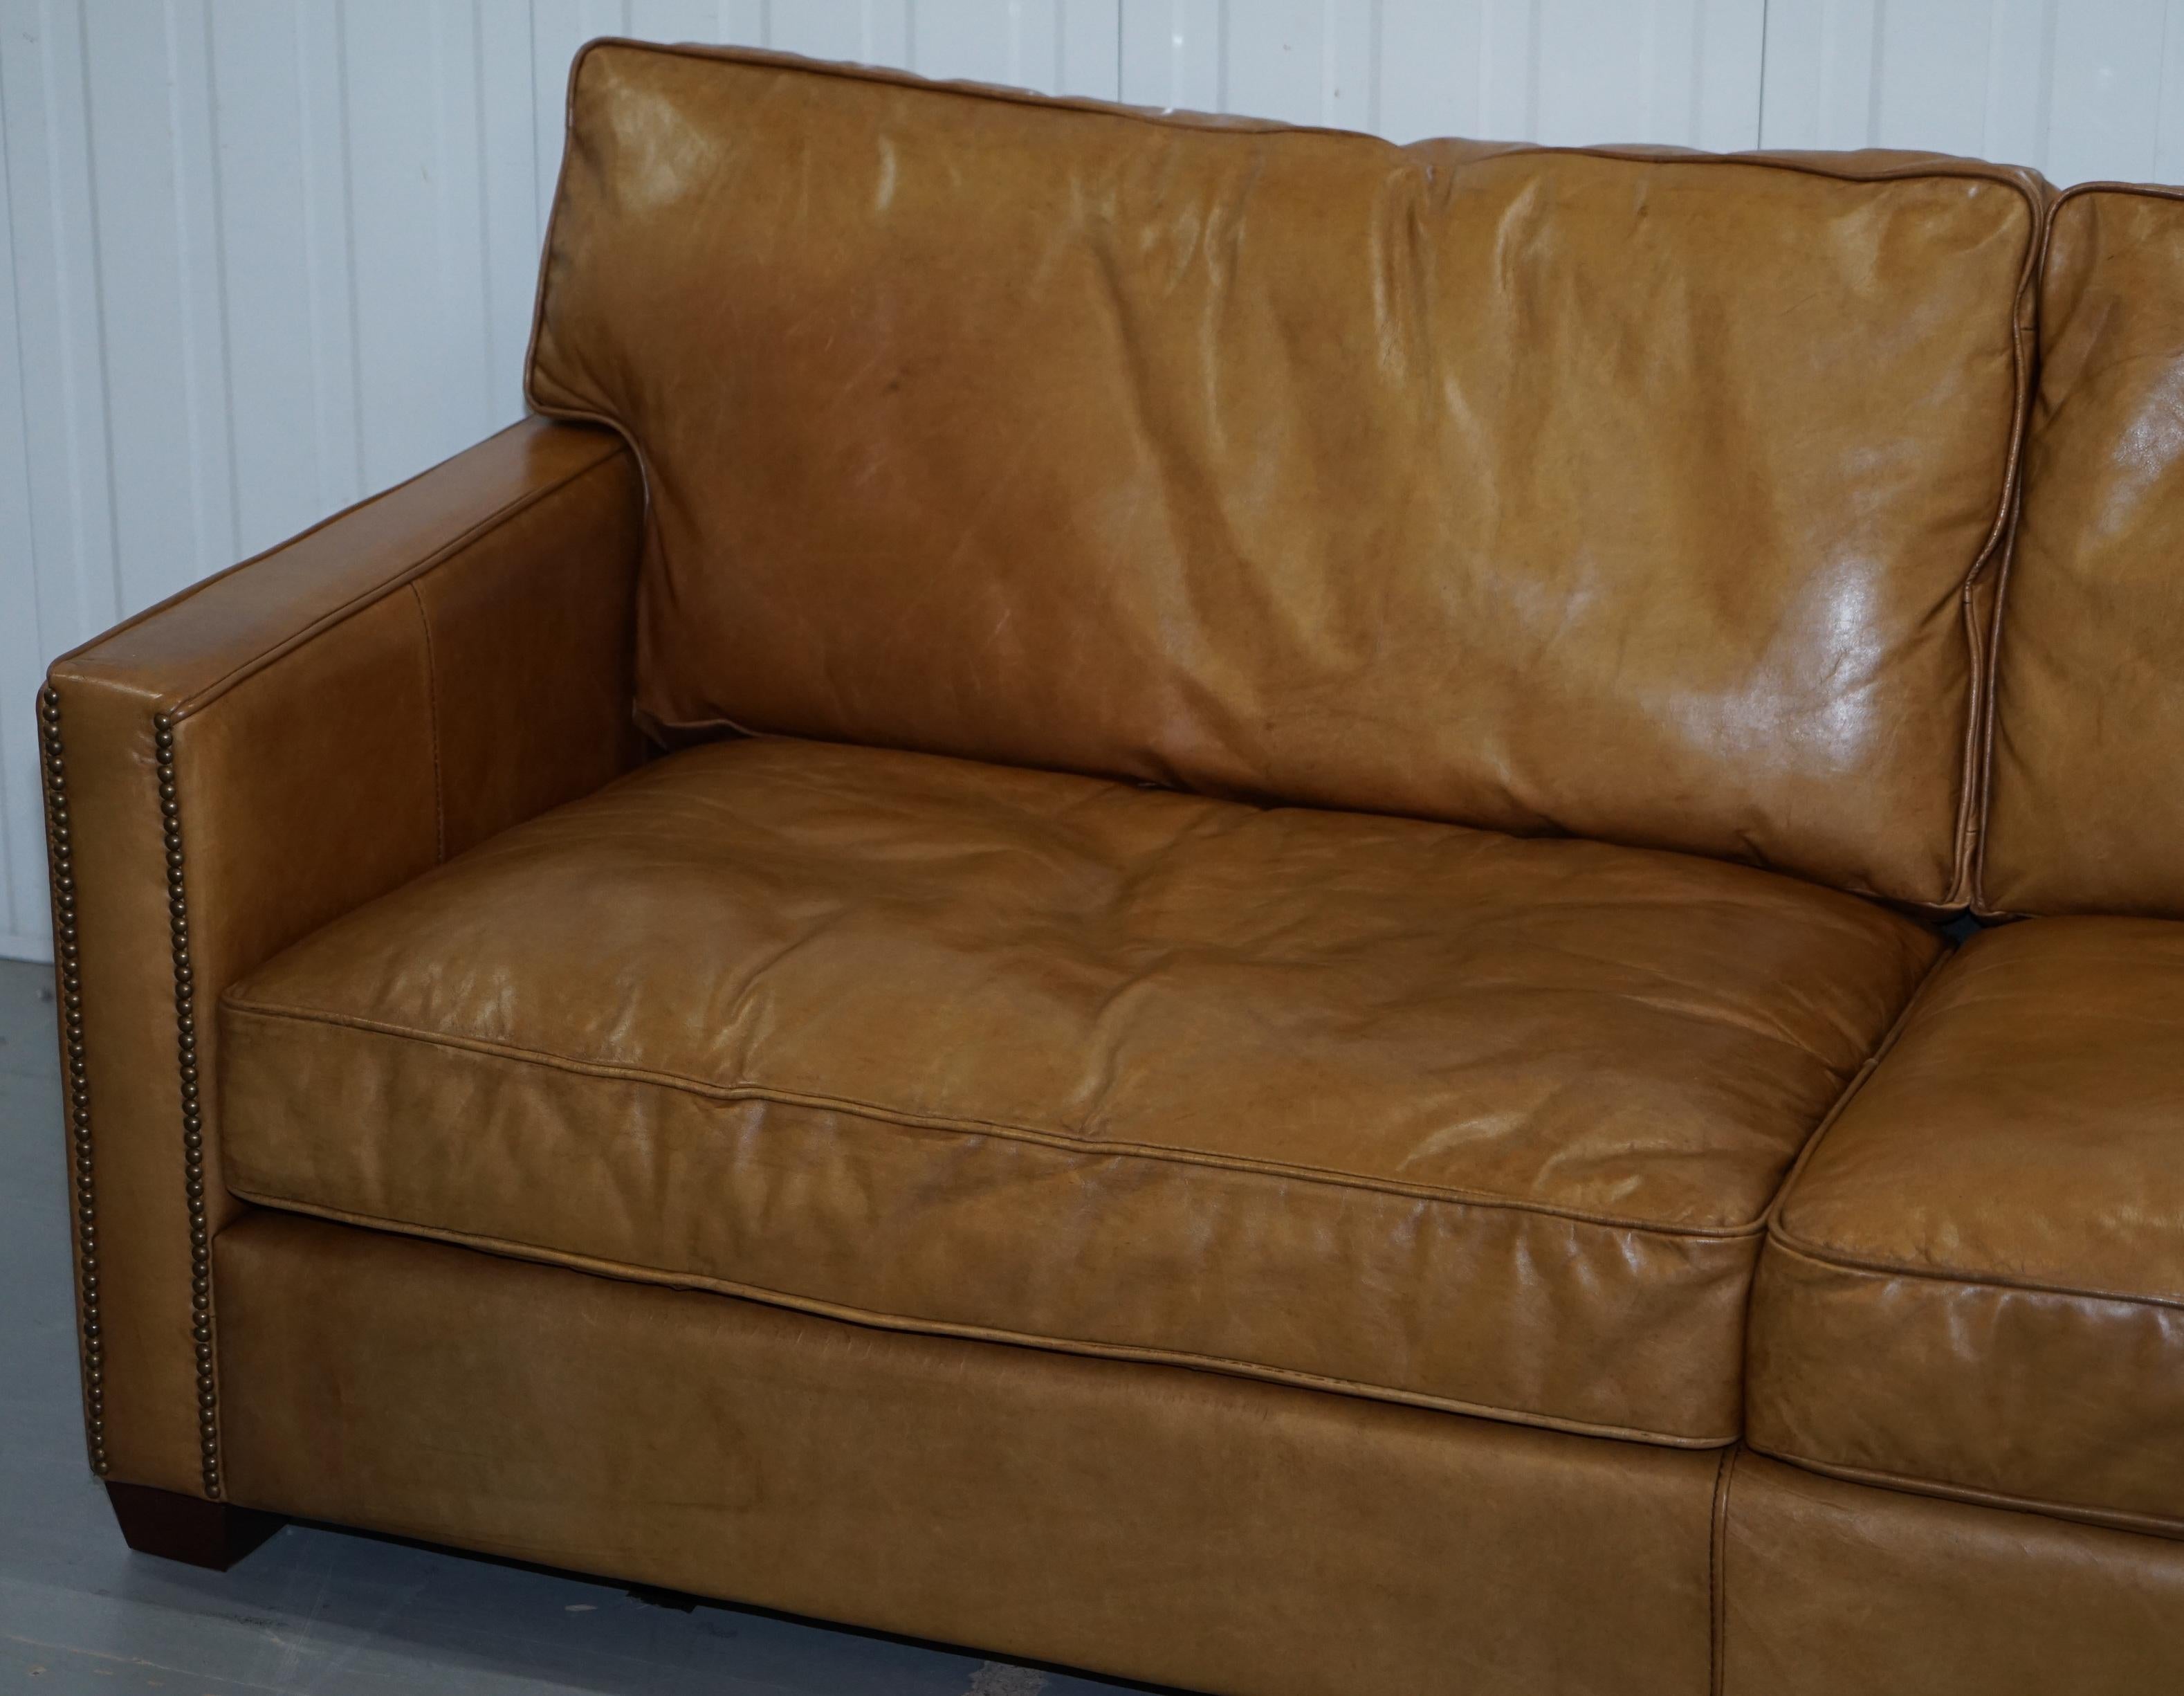 halo leather sofa